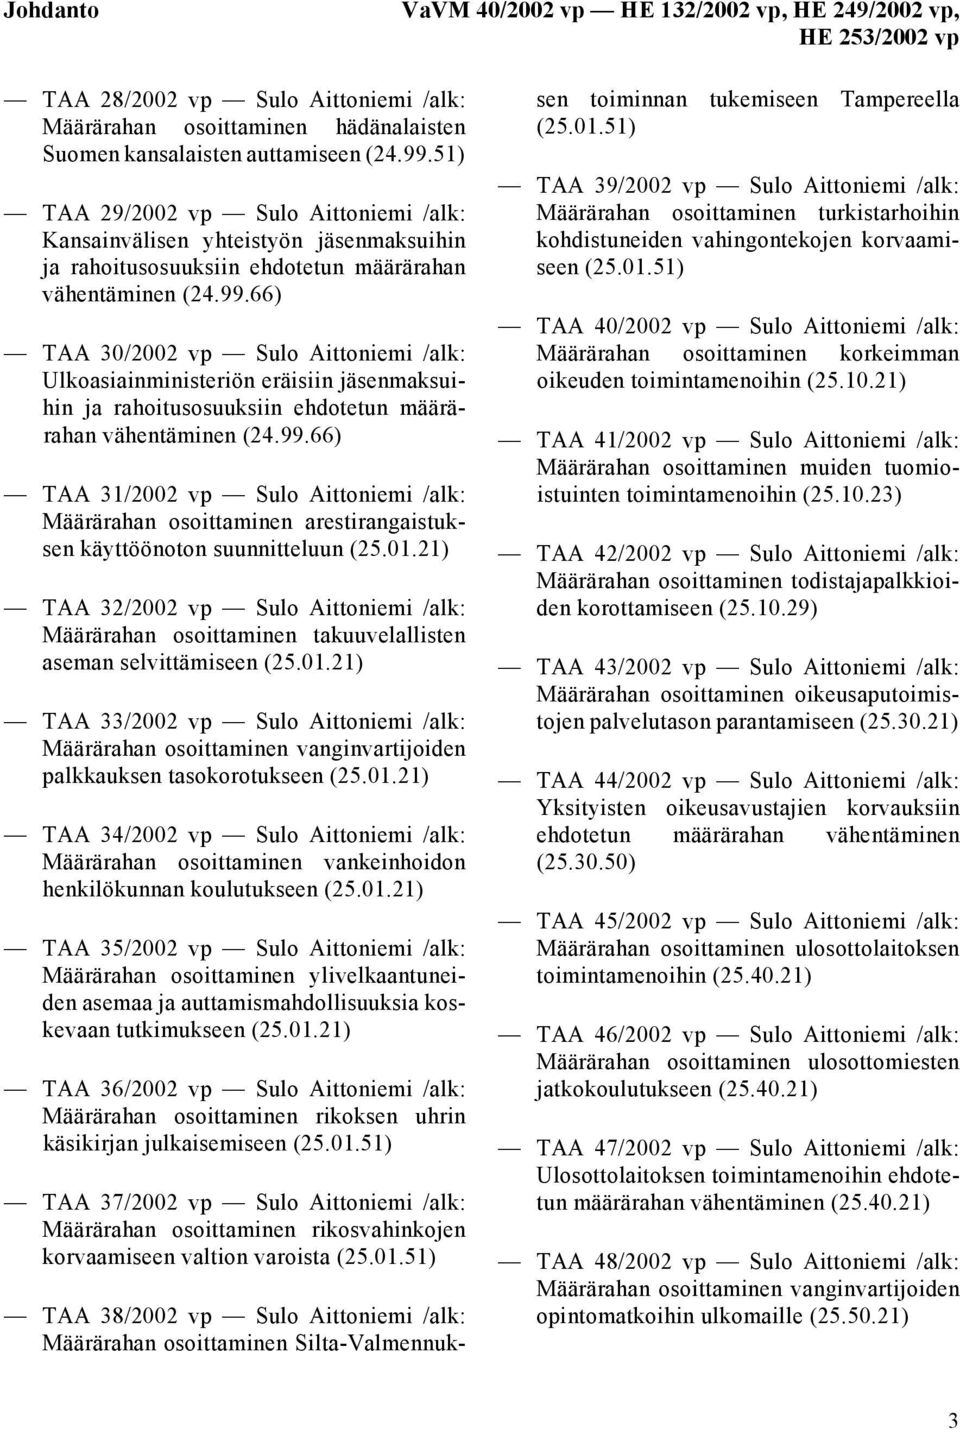 66) TAA 30/2002 vp Sulo Aittoniemi /alk: Ulkoasiainministeriön eräisiin jäsenmaksuihin ja rahoitusosuuksiin ehdotetun määrärahan vähentäminen (24.99.